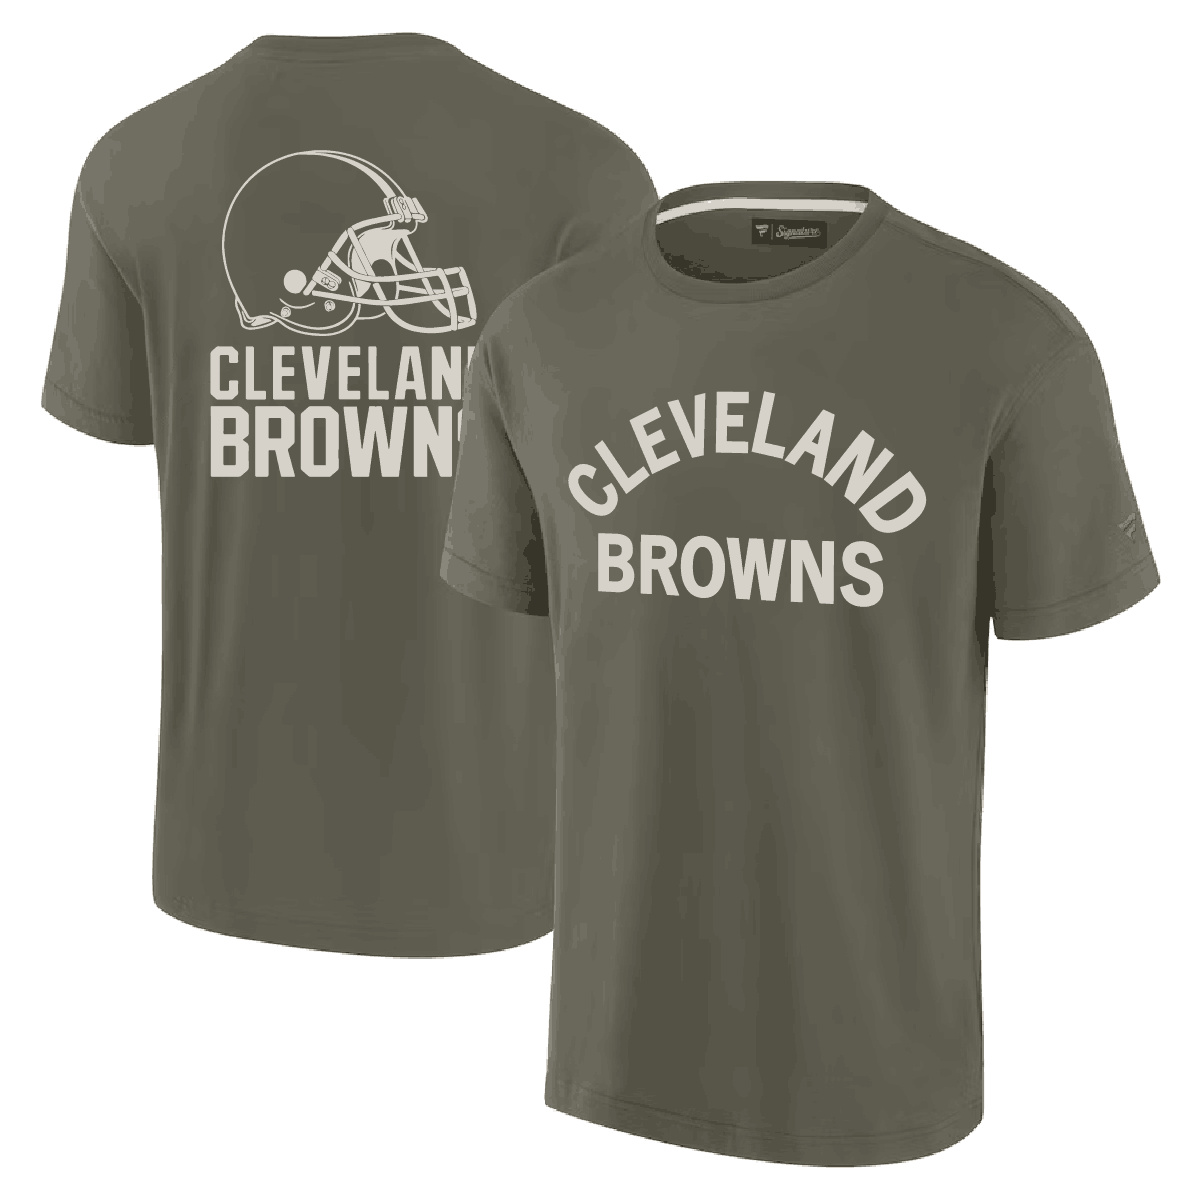 Men's Cleveland Browns Olive Elements Super Soft T-Shirt